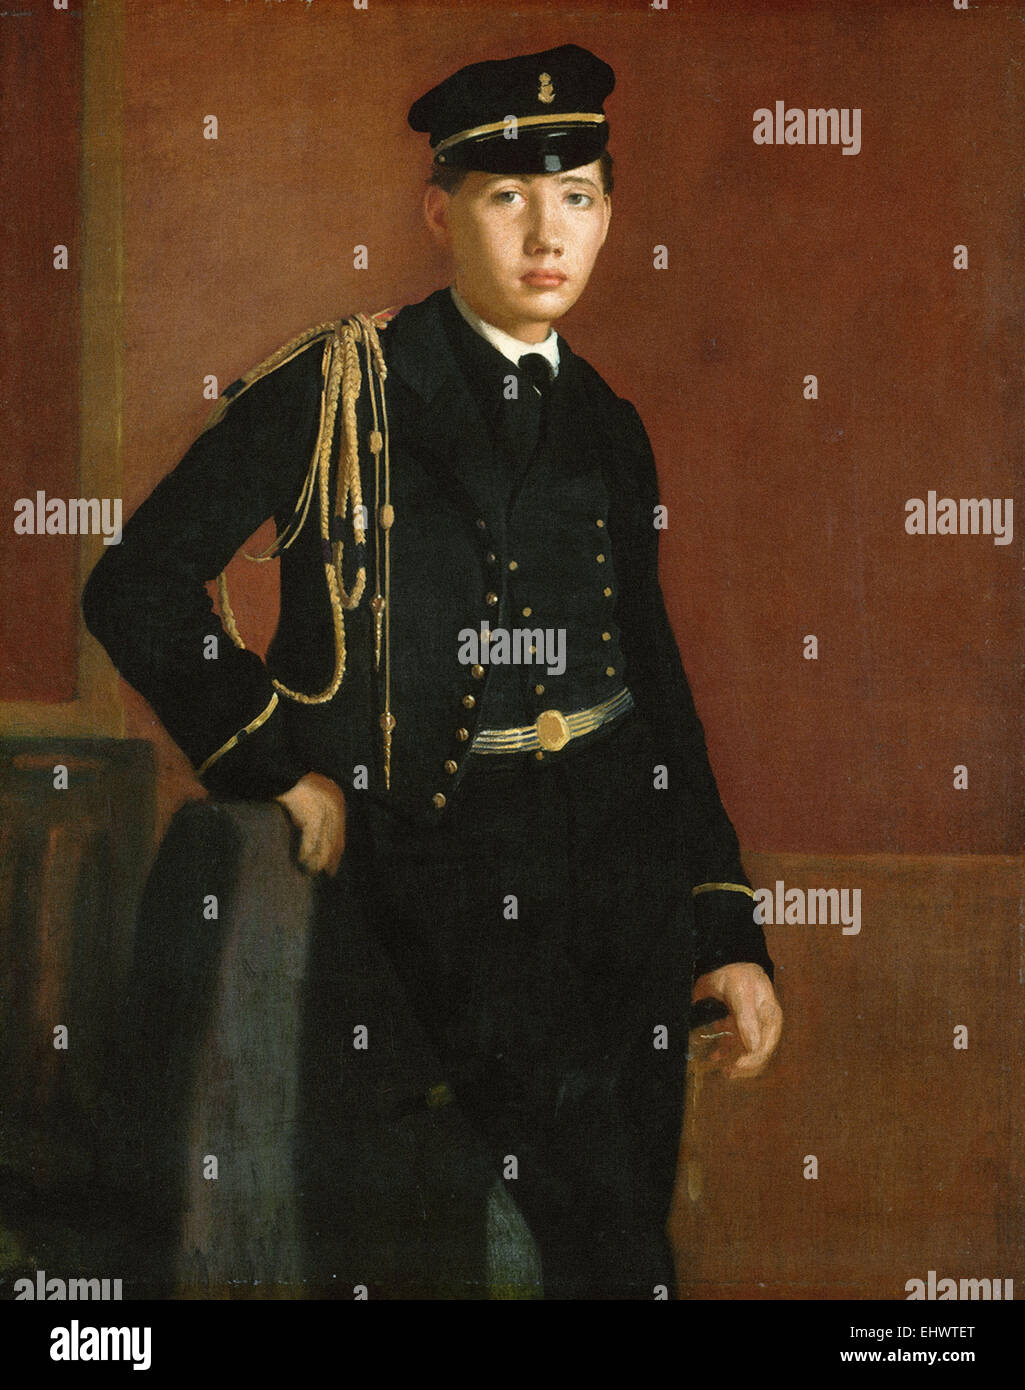 Edgar Degas  Achille De Gas in the Uniform of a Cadet Stock Photo